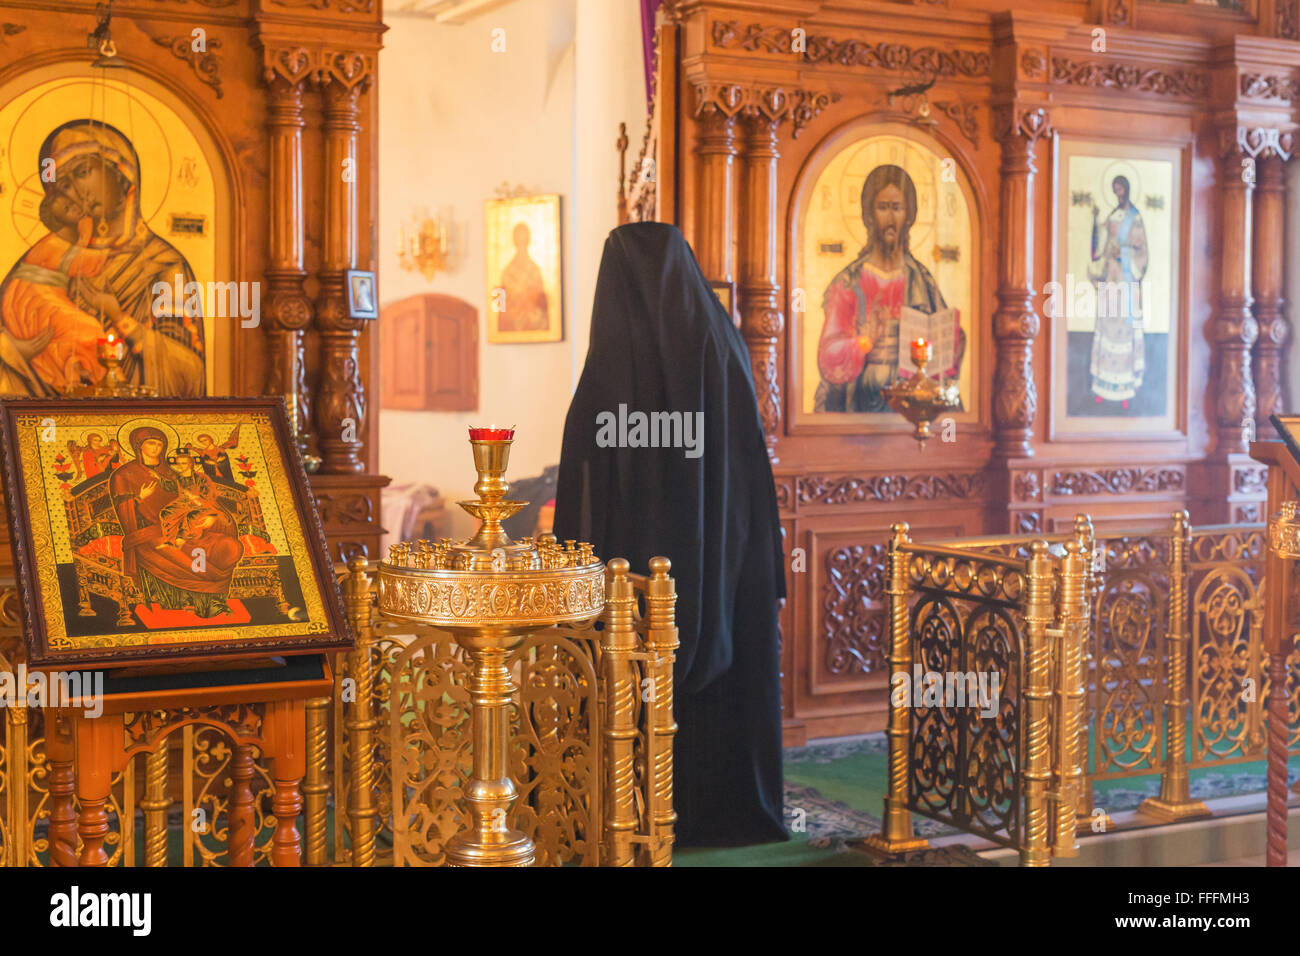 Orthodoxe Kirche innen während des Gottesdienstes, Kloster der Geburt der Heiligen Jungfrau, Rostow, Jaroslawl, Russland Stockfoto